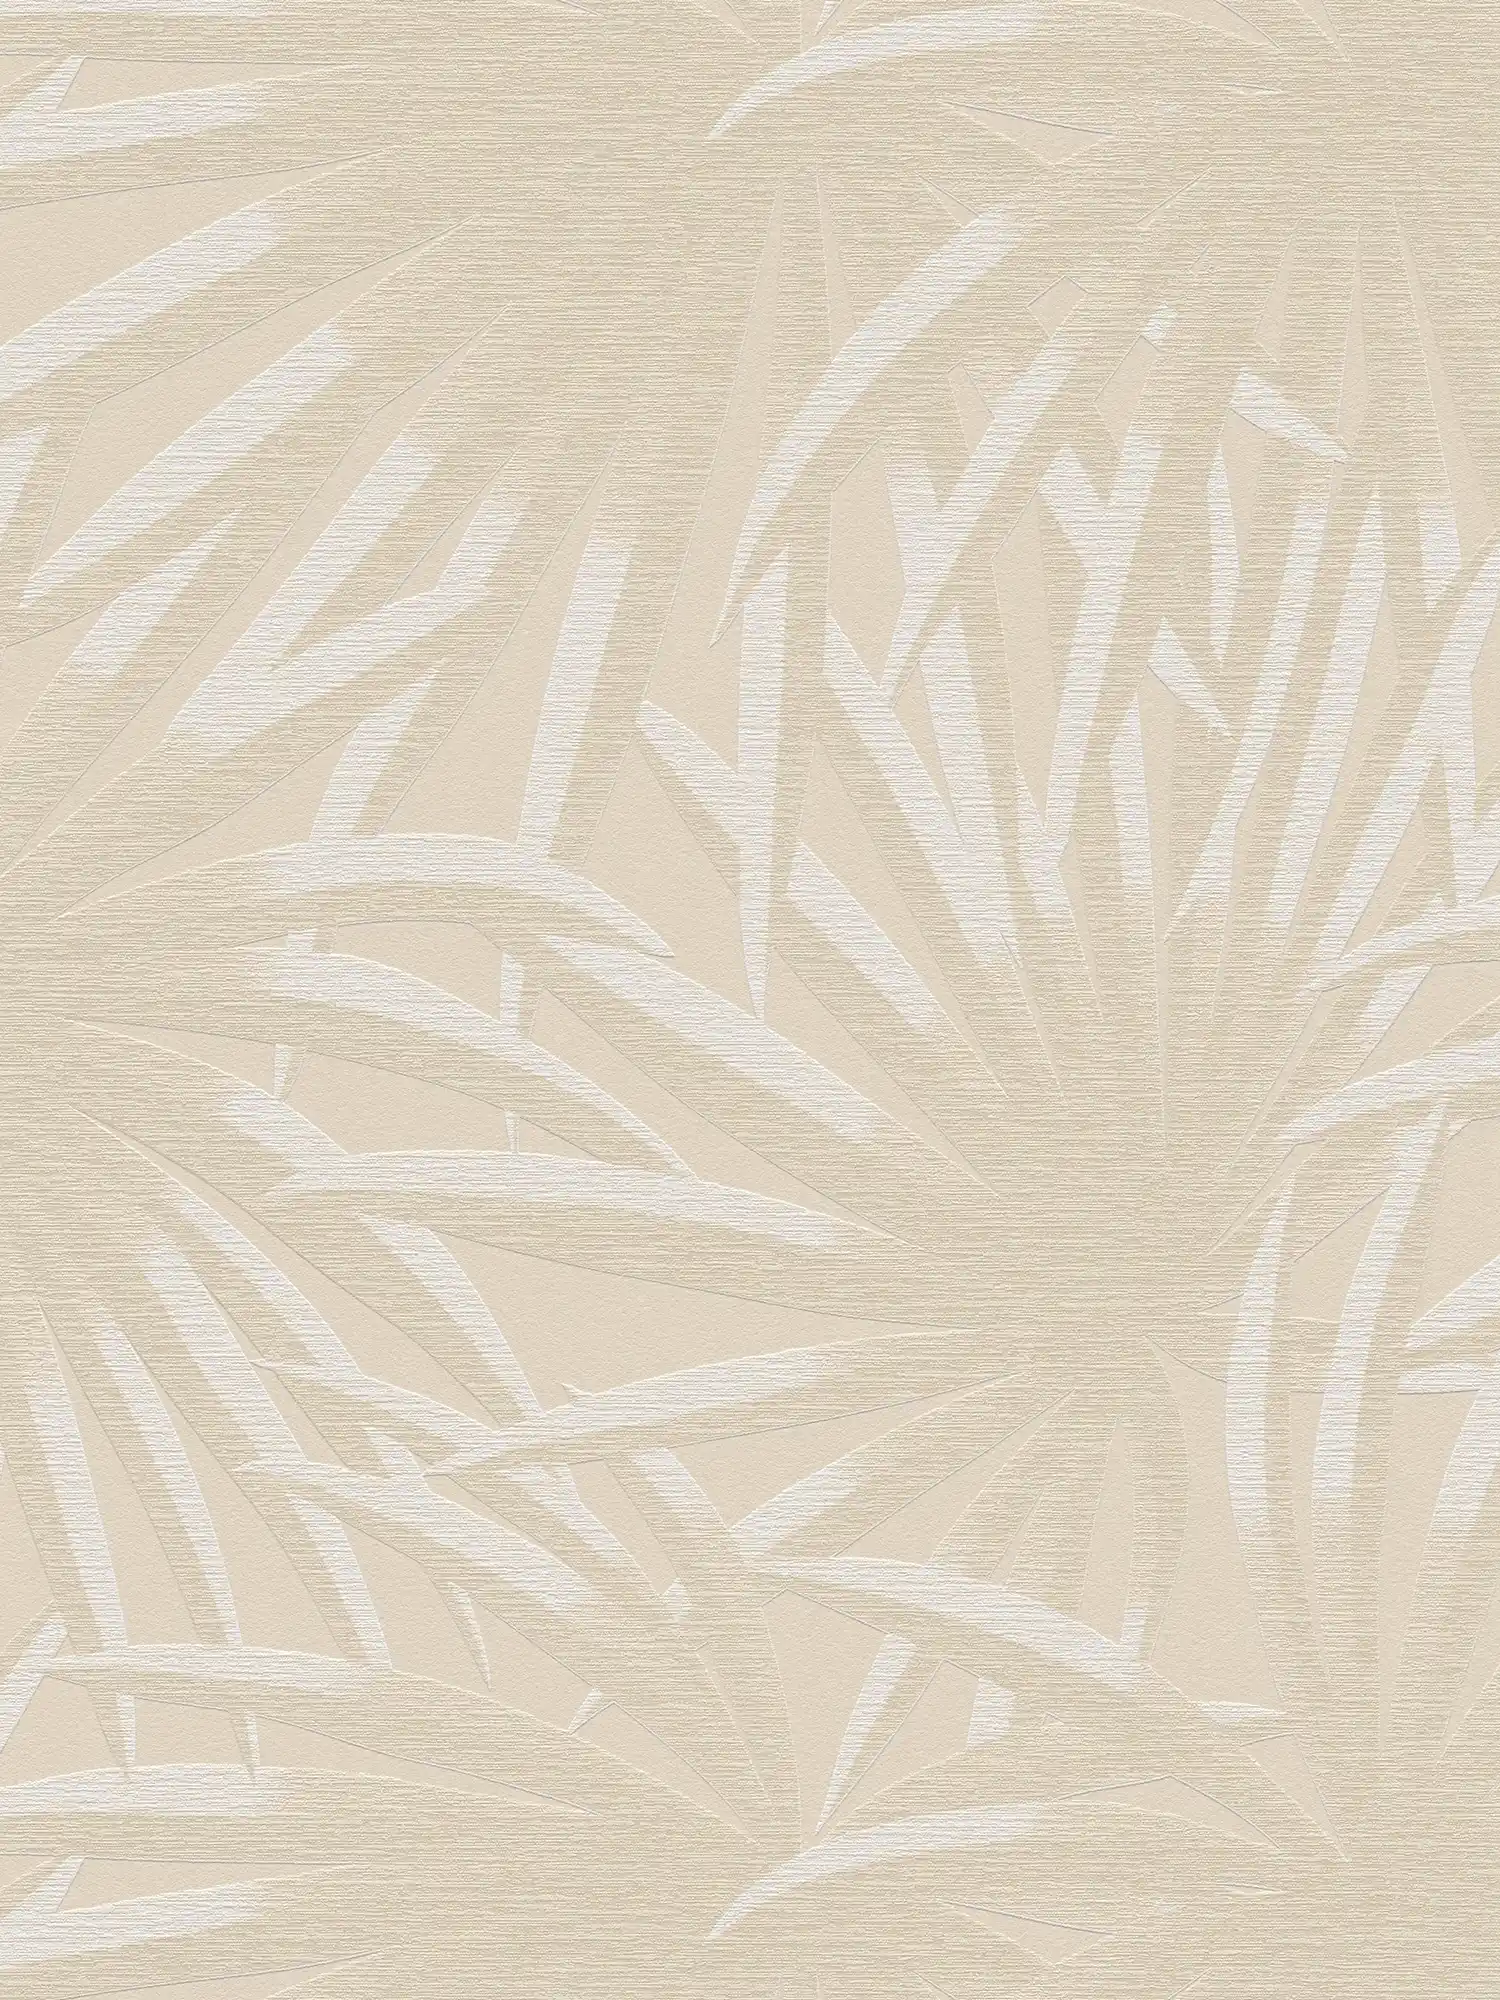 Bloemrijkvliesbehang met palmbladeren - beige, wit
